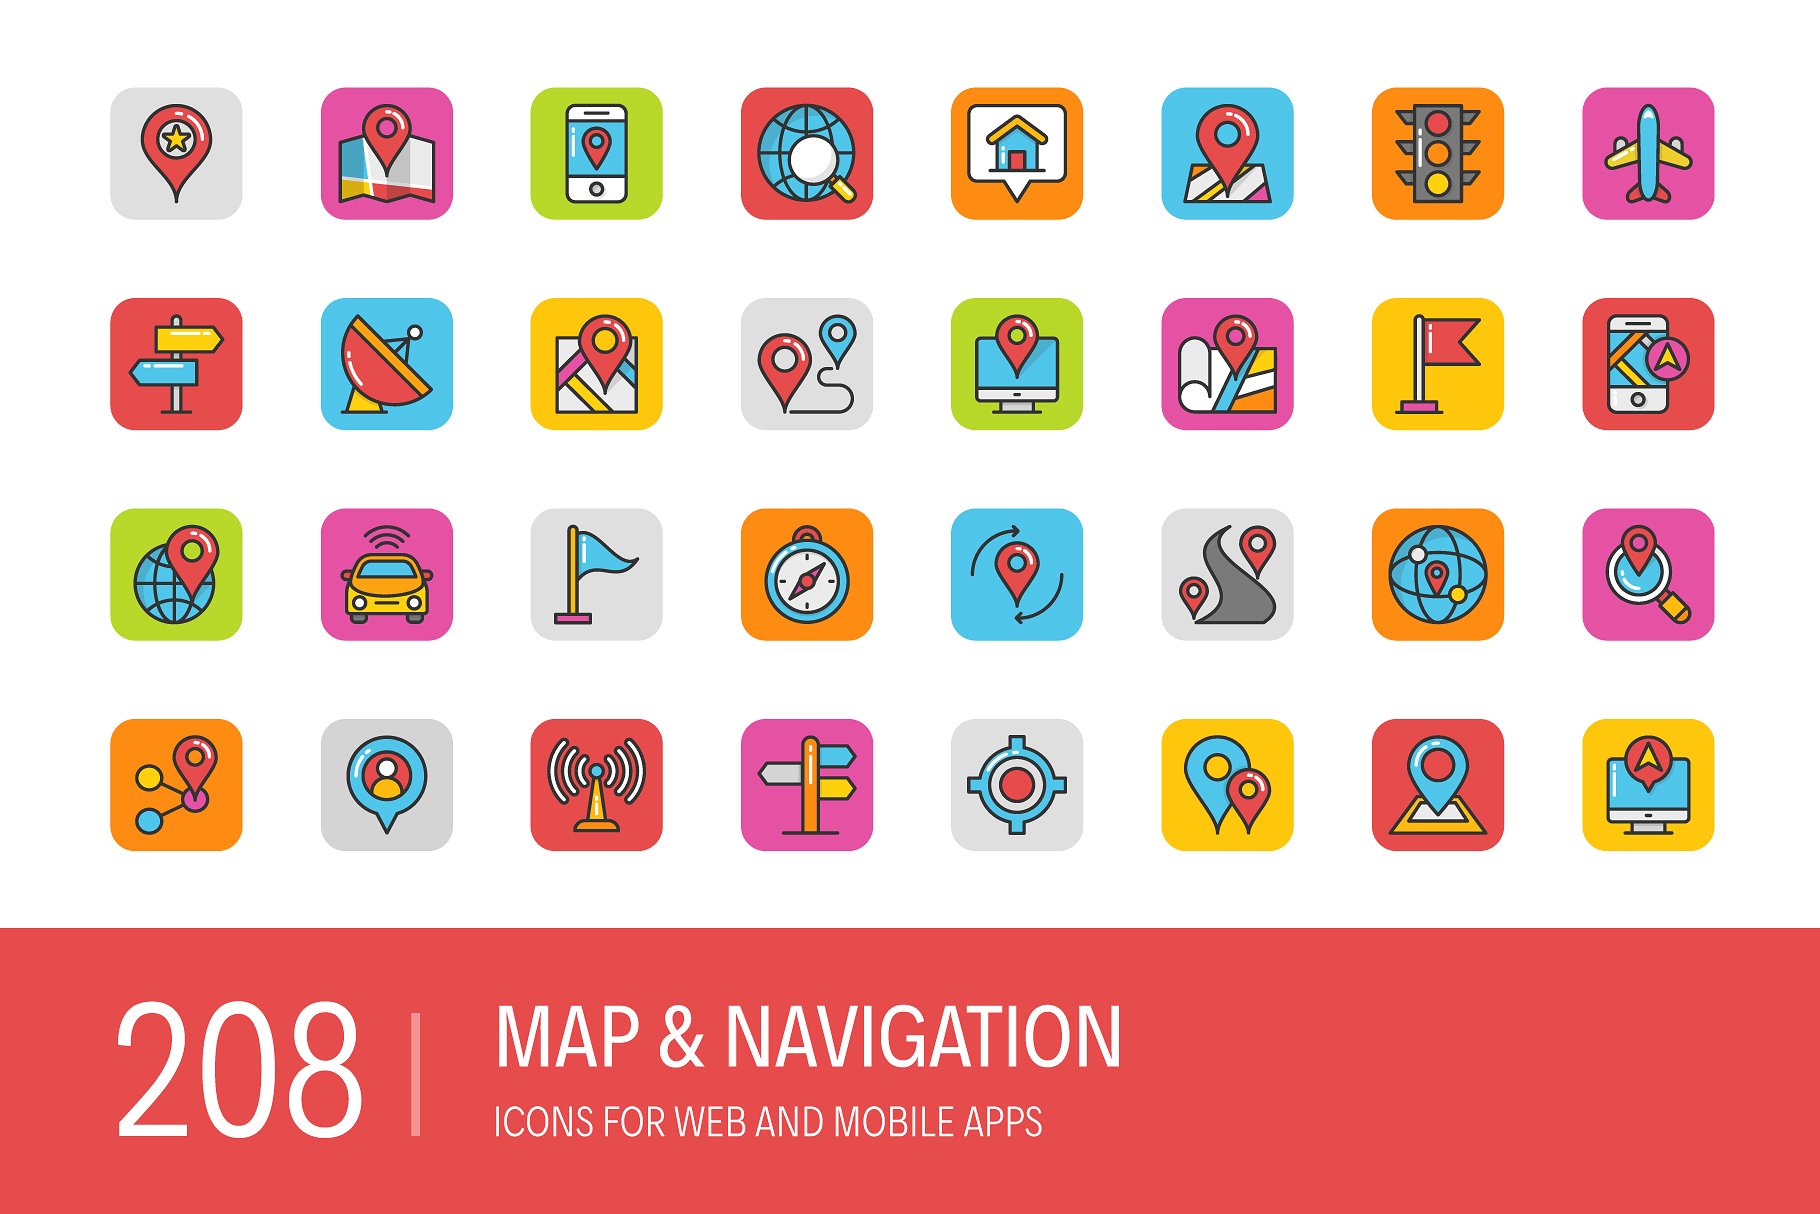 地图和导航图标素材 208 Map and Navigati